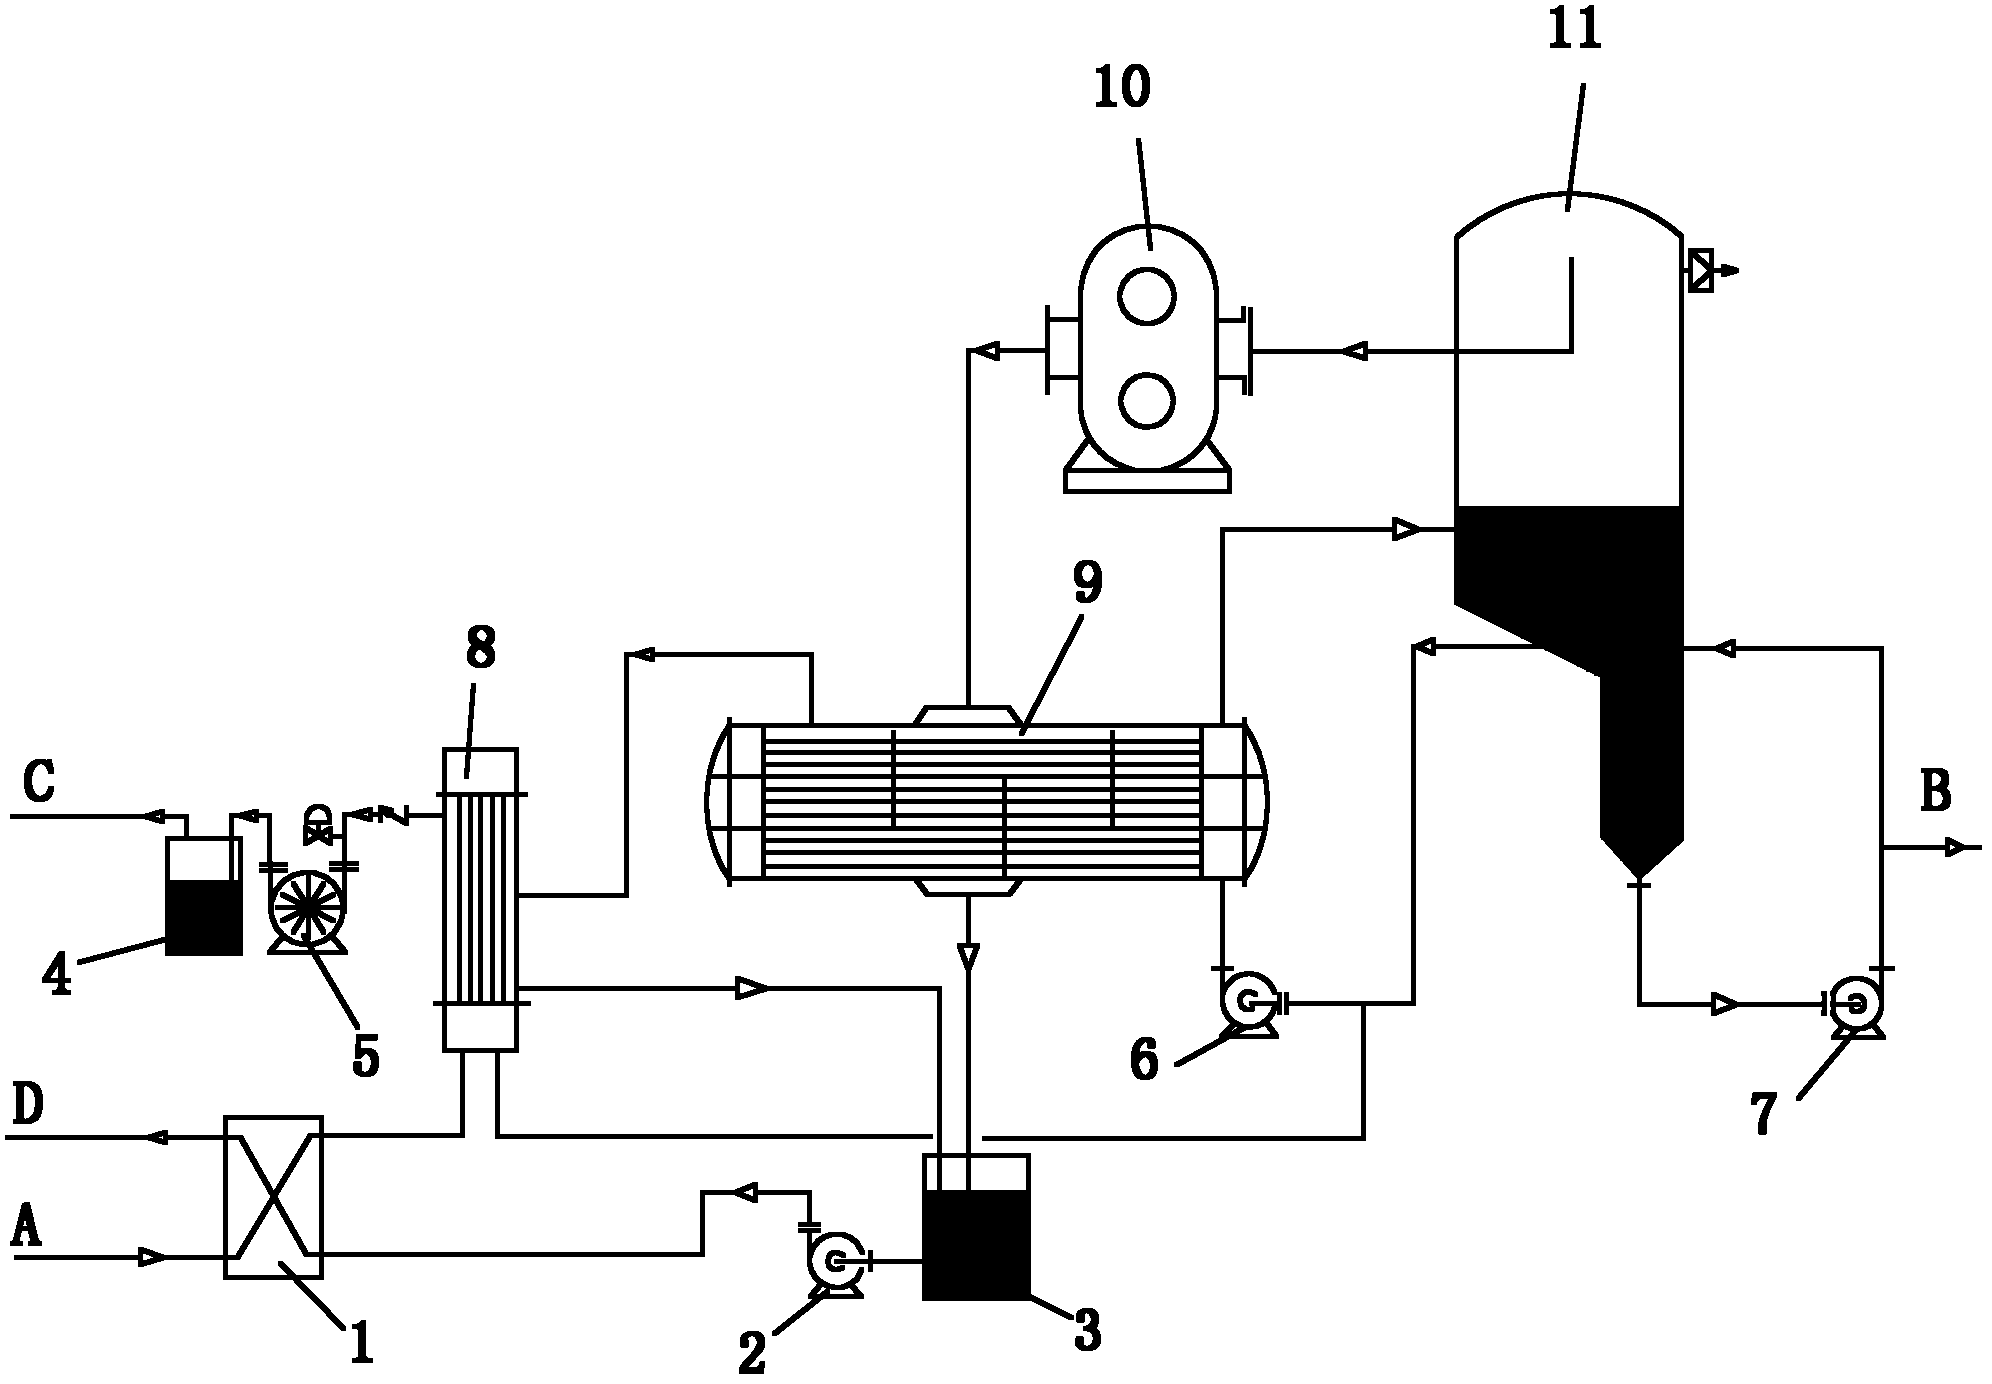 Method for evaporating sodium persulfate at low temperature